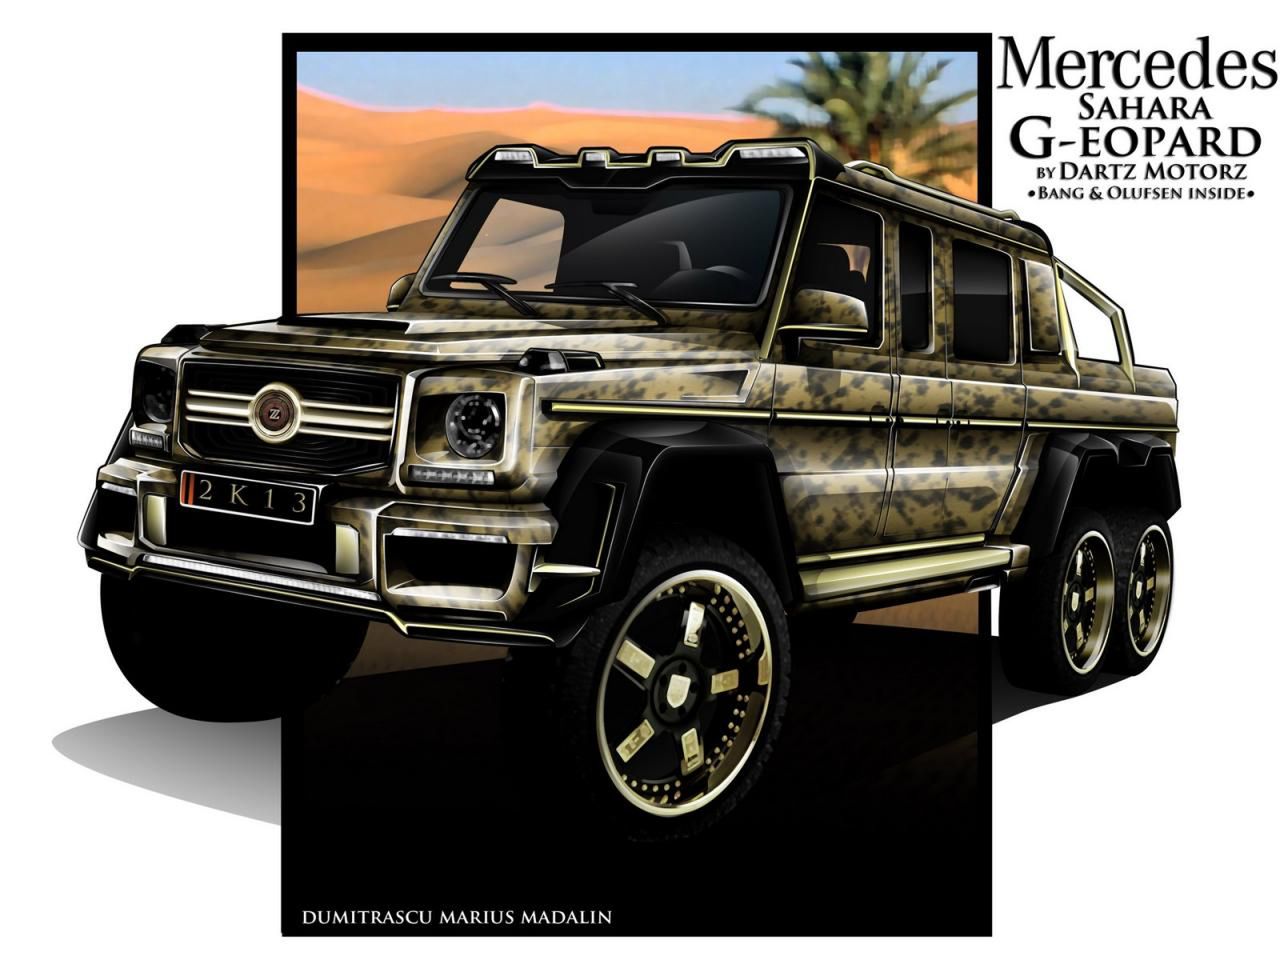 Mercedes-Benz G63 AMG 6x6 Sahara G-eopard - kolejny projekt Dartz Motorz